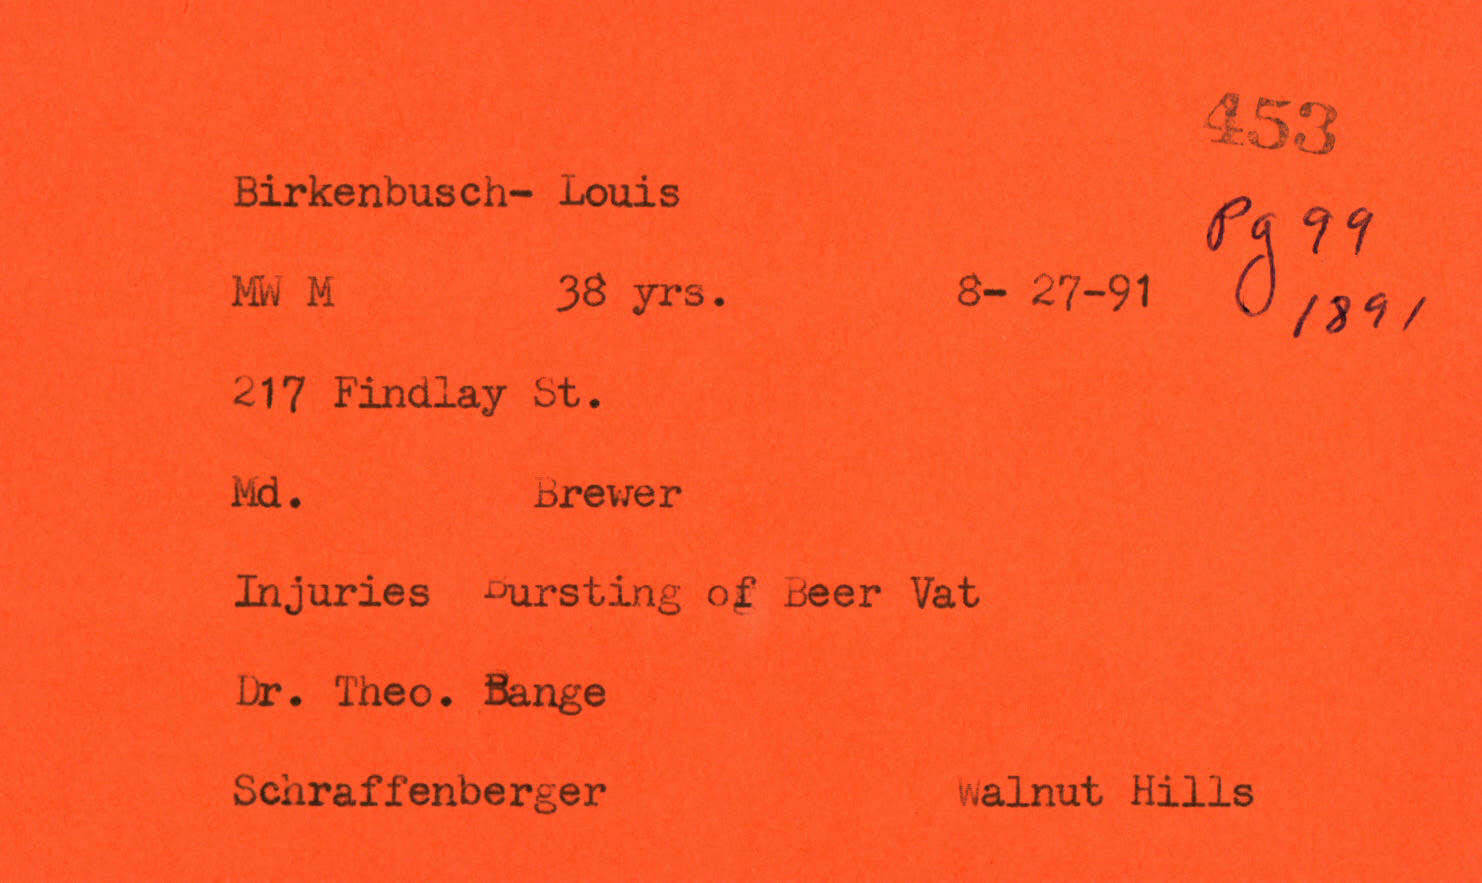 Death record for Louis Birkenbusch